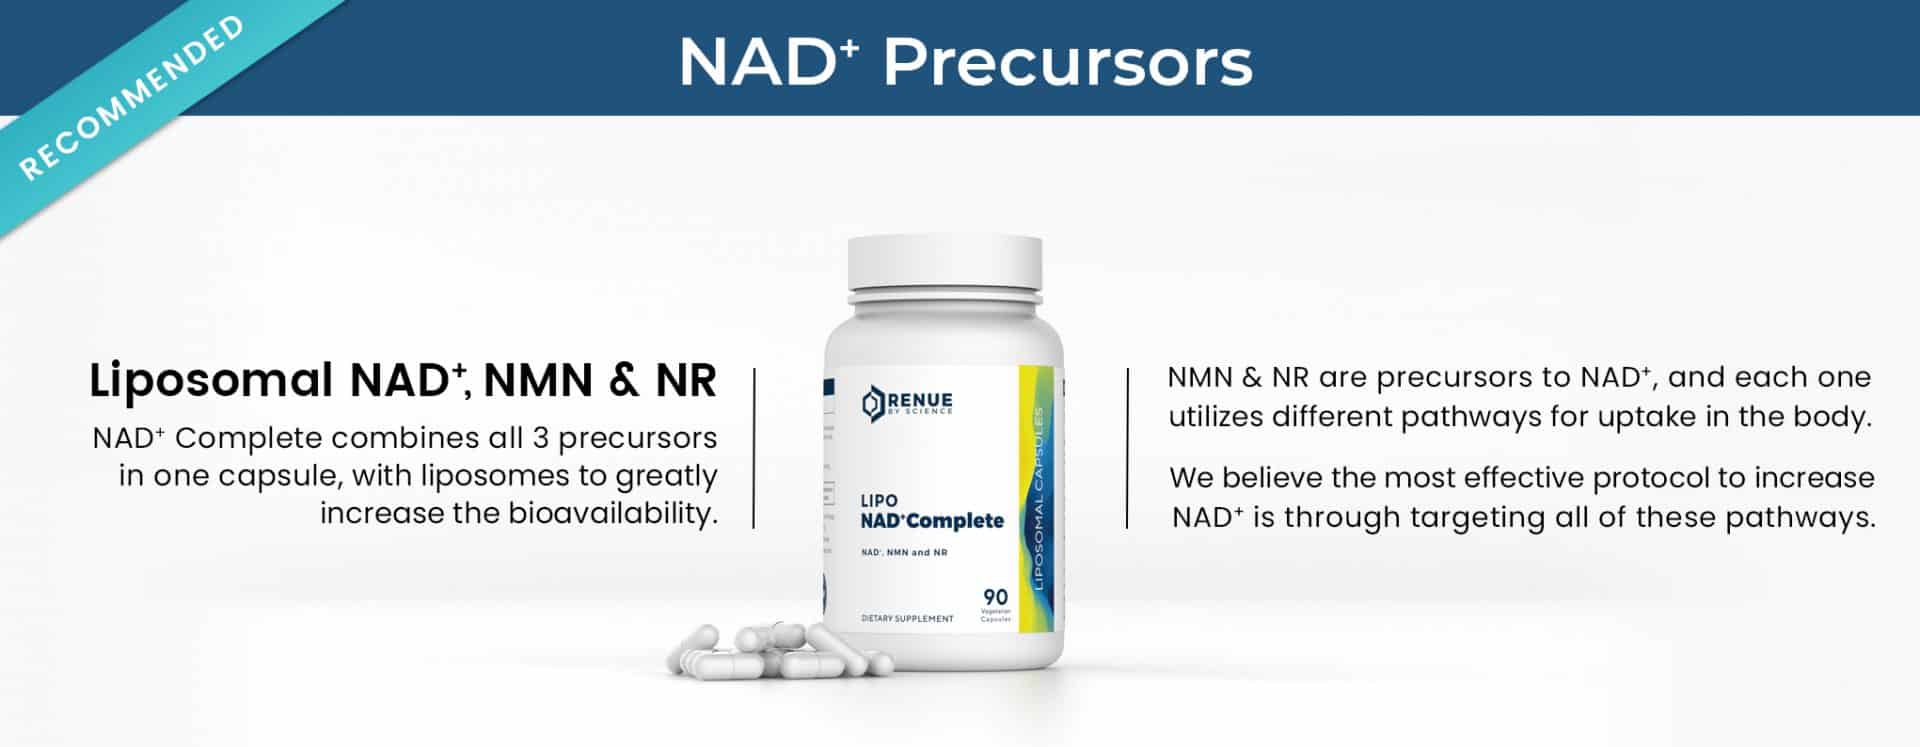 NAD+ Precursors